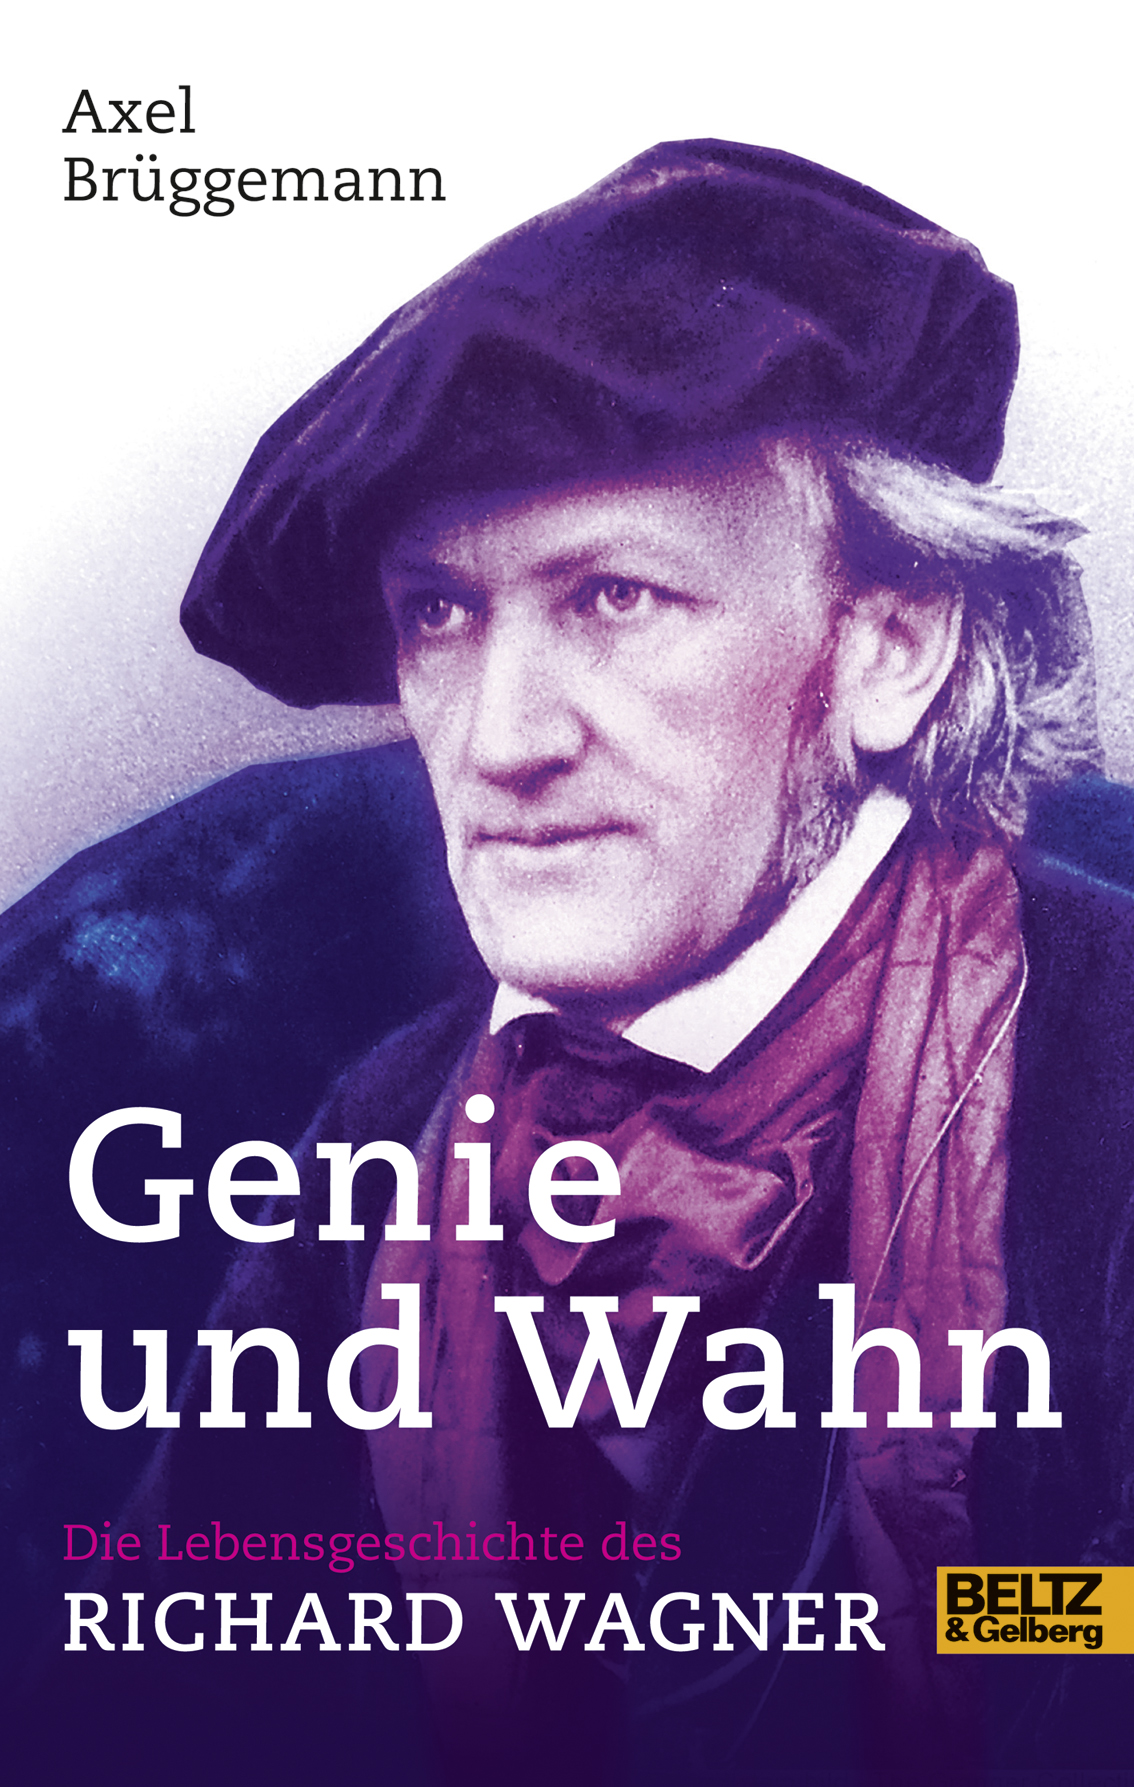 Die Lebensgeschichte des <b>Richard Wagner</b> ... - 9783407811400